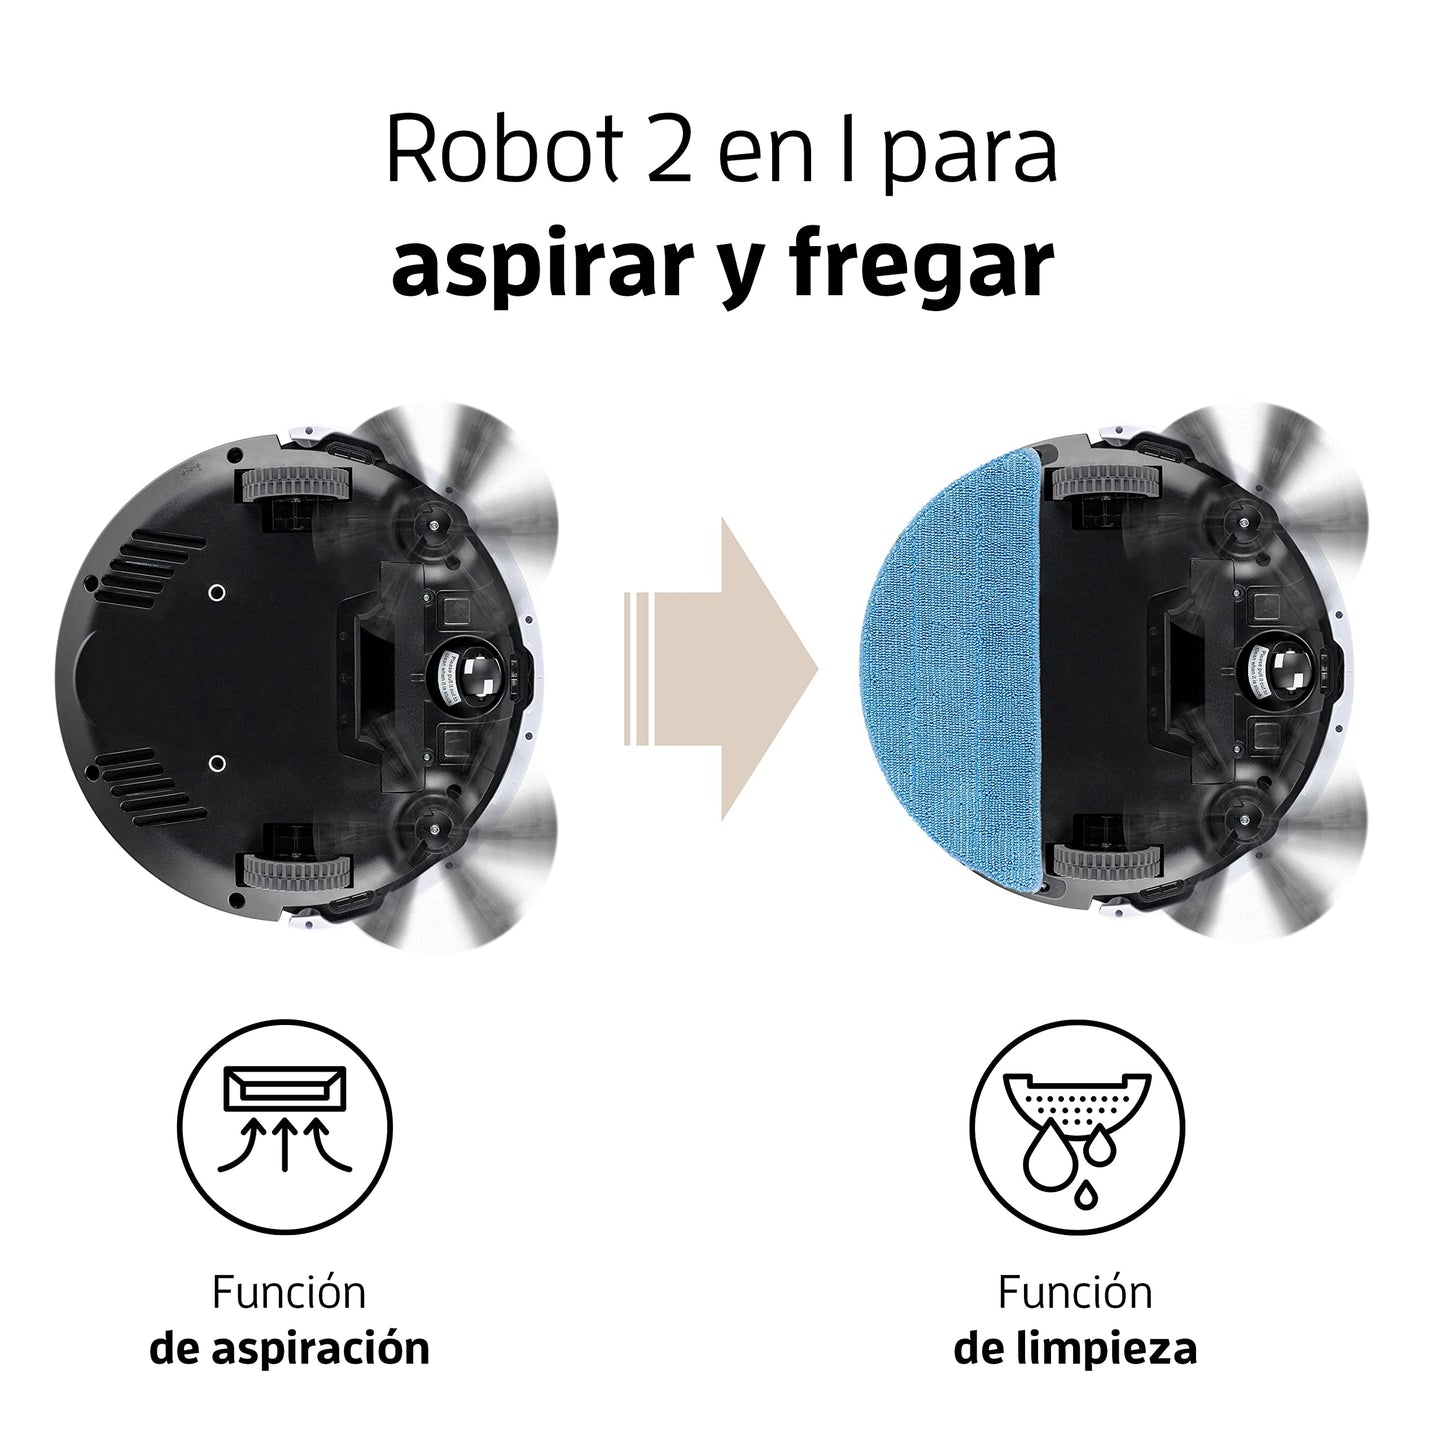 ZACO Robot aspirador y fregasuelos V5x con WiFi, Alexa, Google, App, Aspiradora y fregadora 2en1 para suelos duros, madera, parquet y alfombras, Robots aspiradores para perros y pelos de mascotas